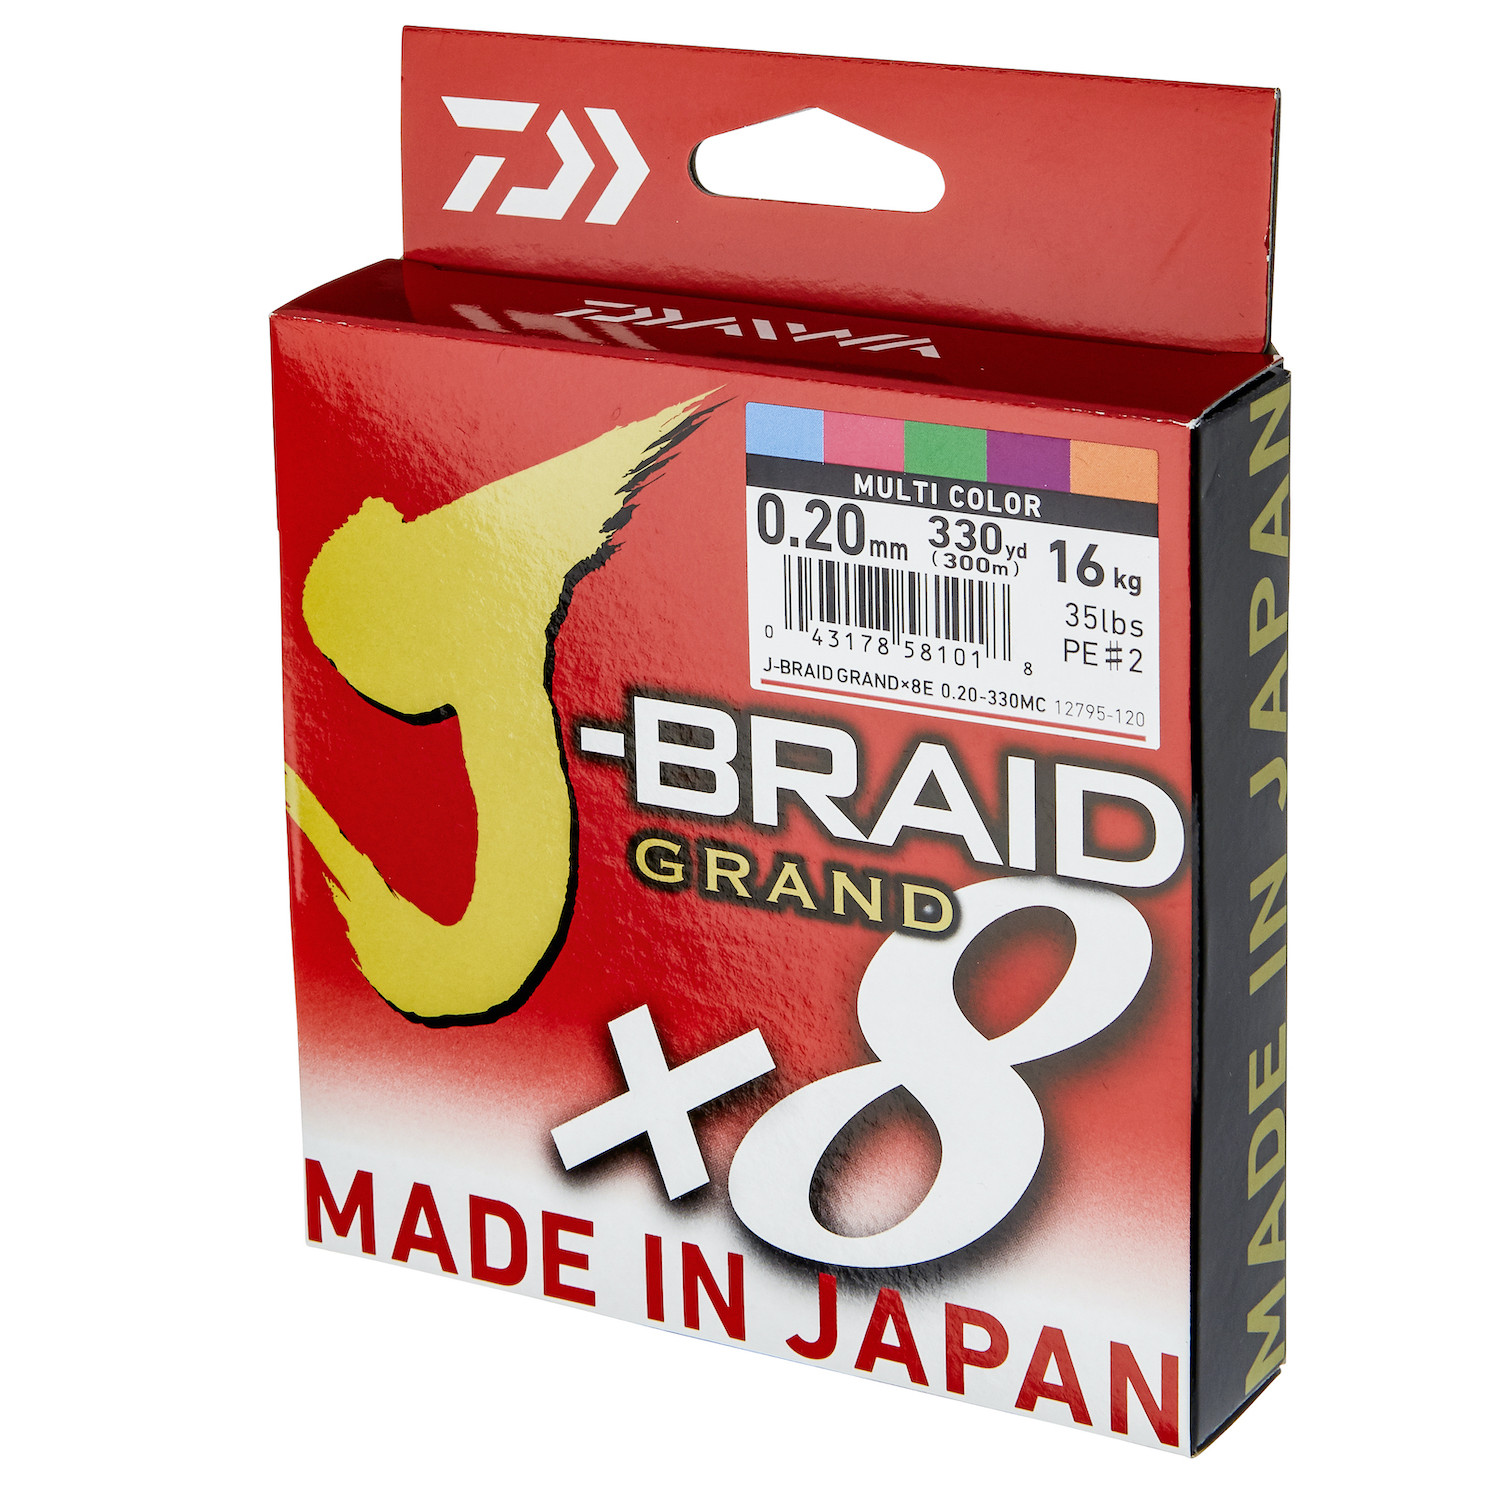 Daiwa J-Braid Fishing Line X8 54.4/120Lb .55MM Multi Colour 500m Spool, Shop Today. Get it Tomorrow!